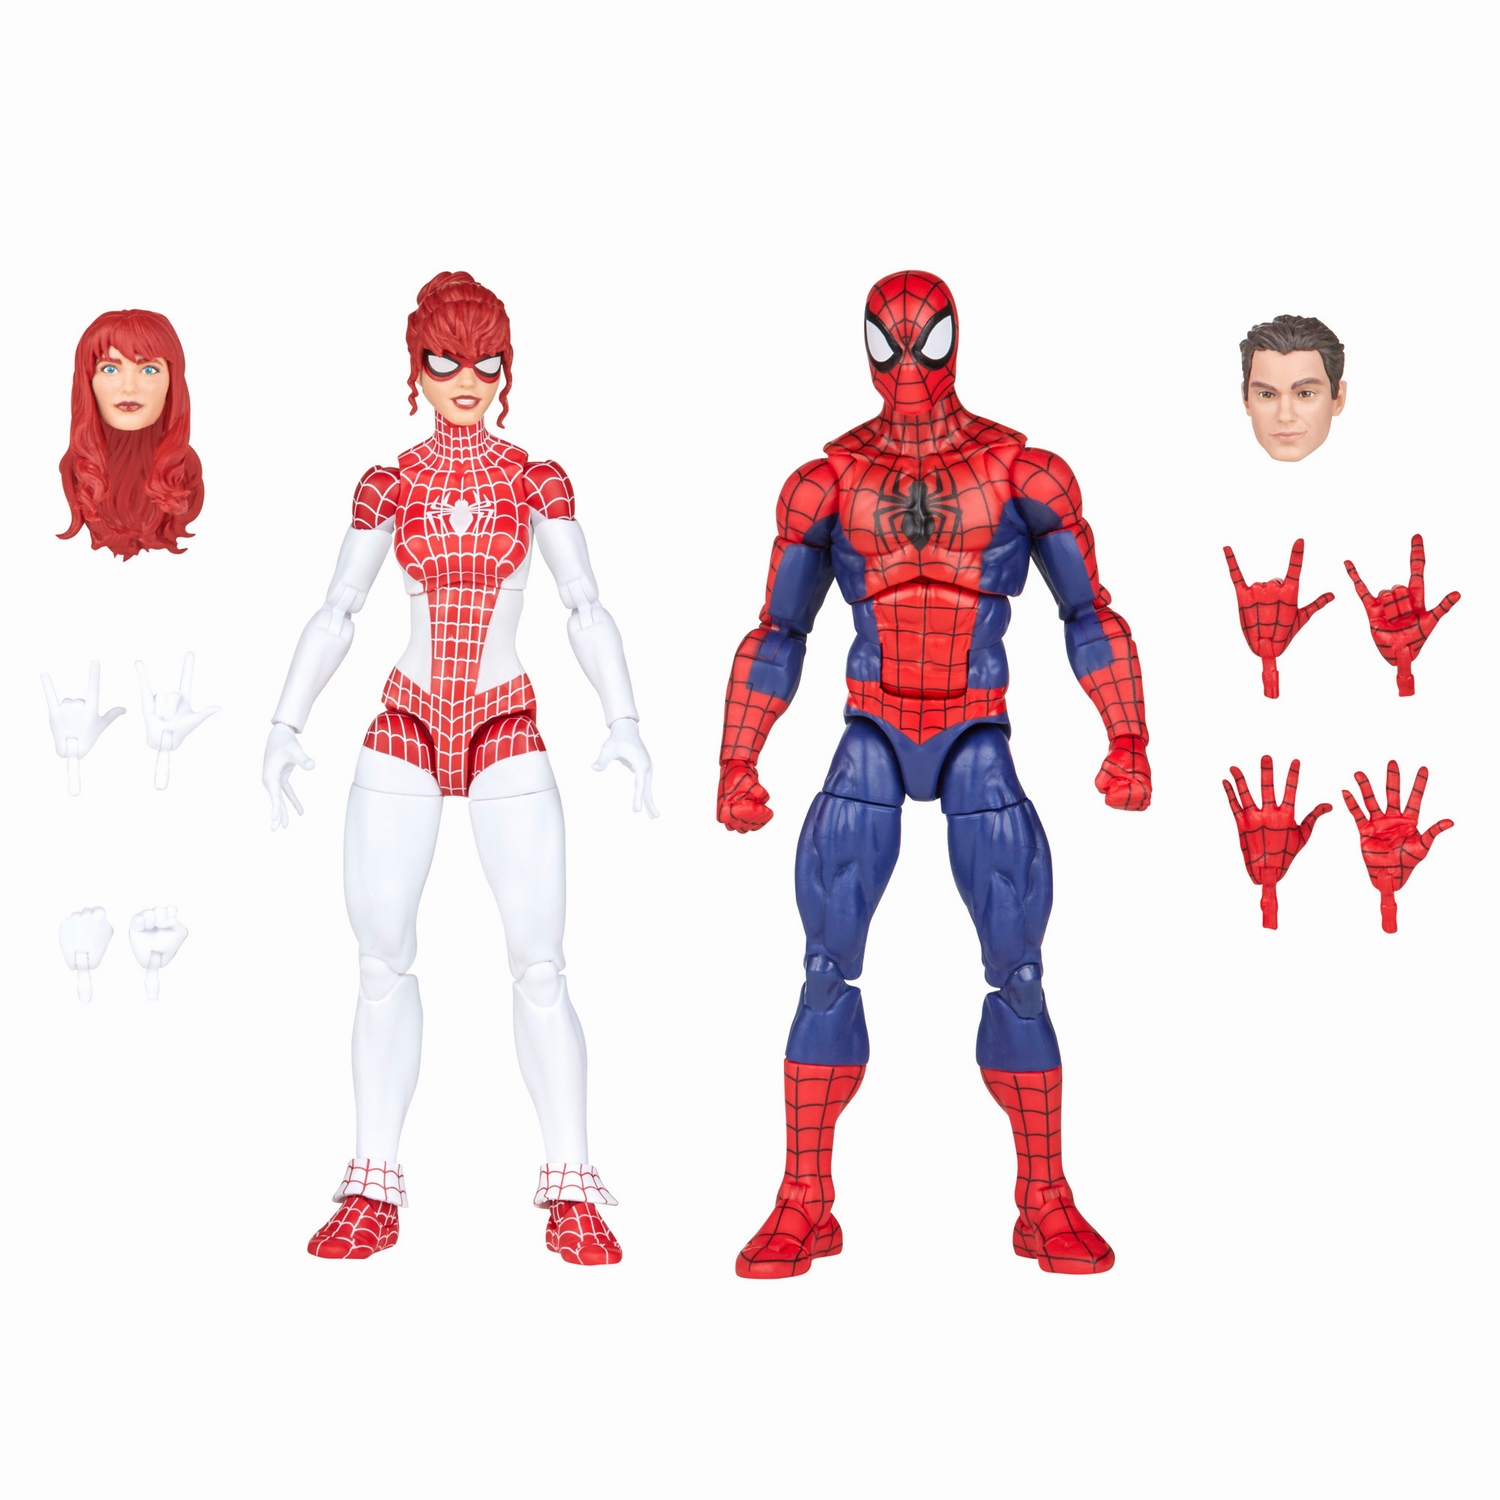 Marvel Legends Series Spider-Man and Marvel’s Spinneret - Image 23.jpg